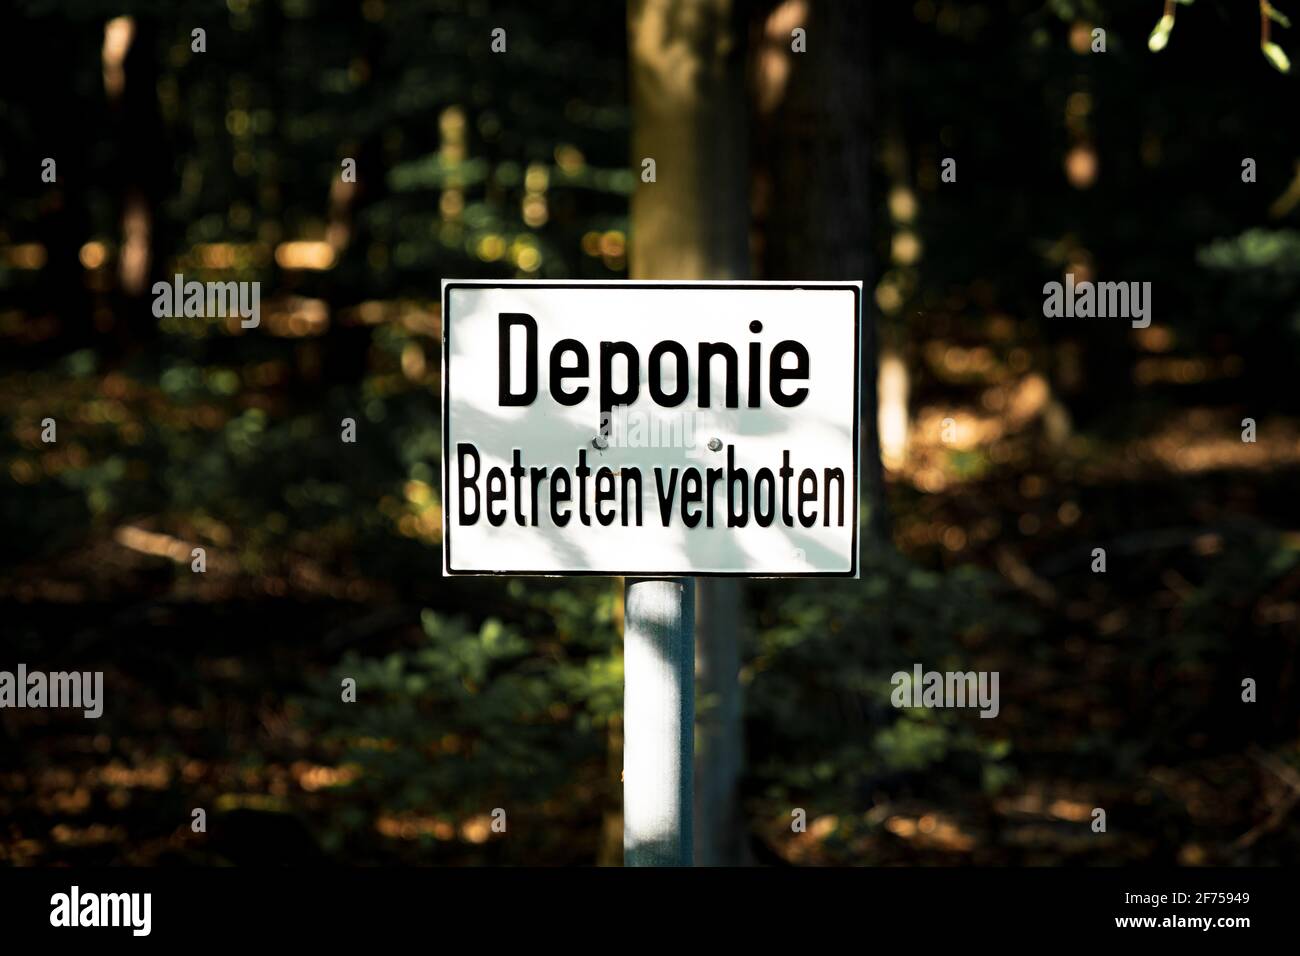 Panneau: Deponie Betreten verboten (allemand pour: Décharge, ne pas entrer), vu la forêt Quellenhang am Lintorfer Mark à Ratingen, Rhénanie-du-Nord-Westphalie Banque D'Images